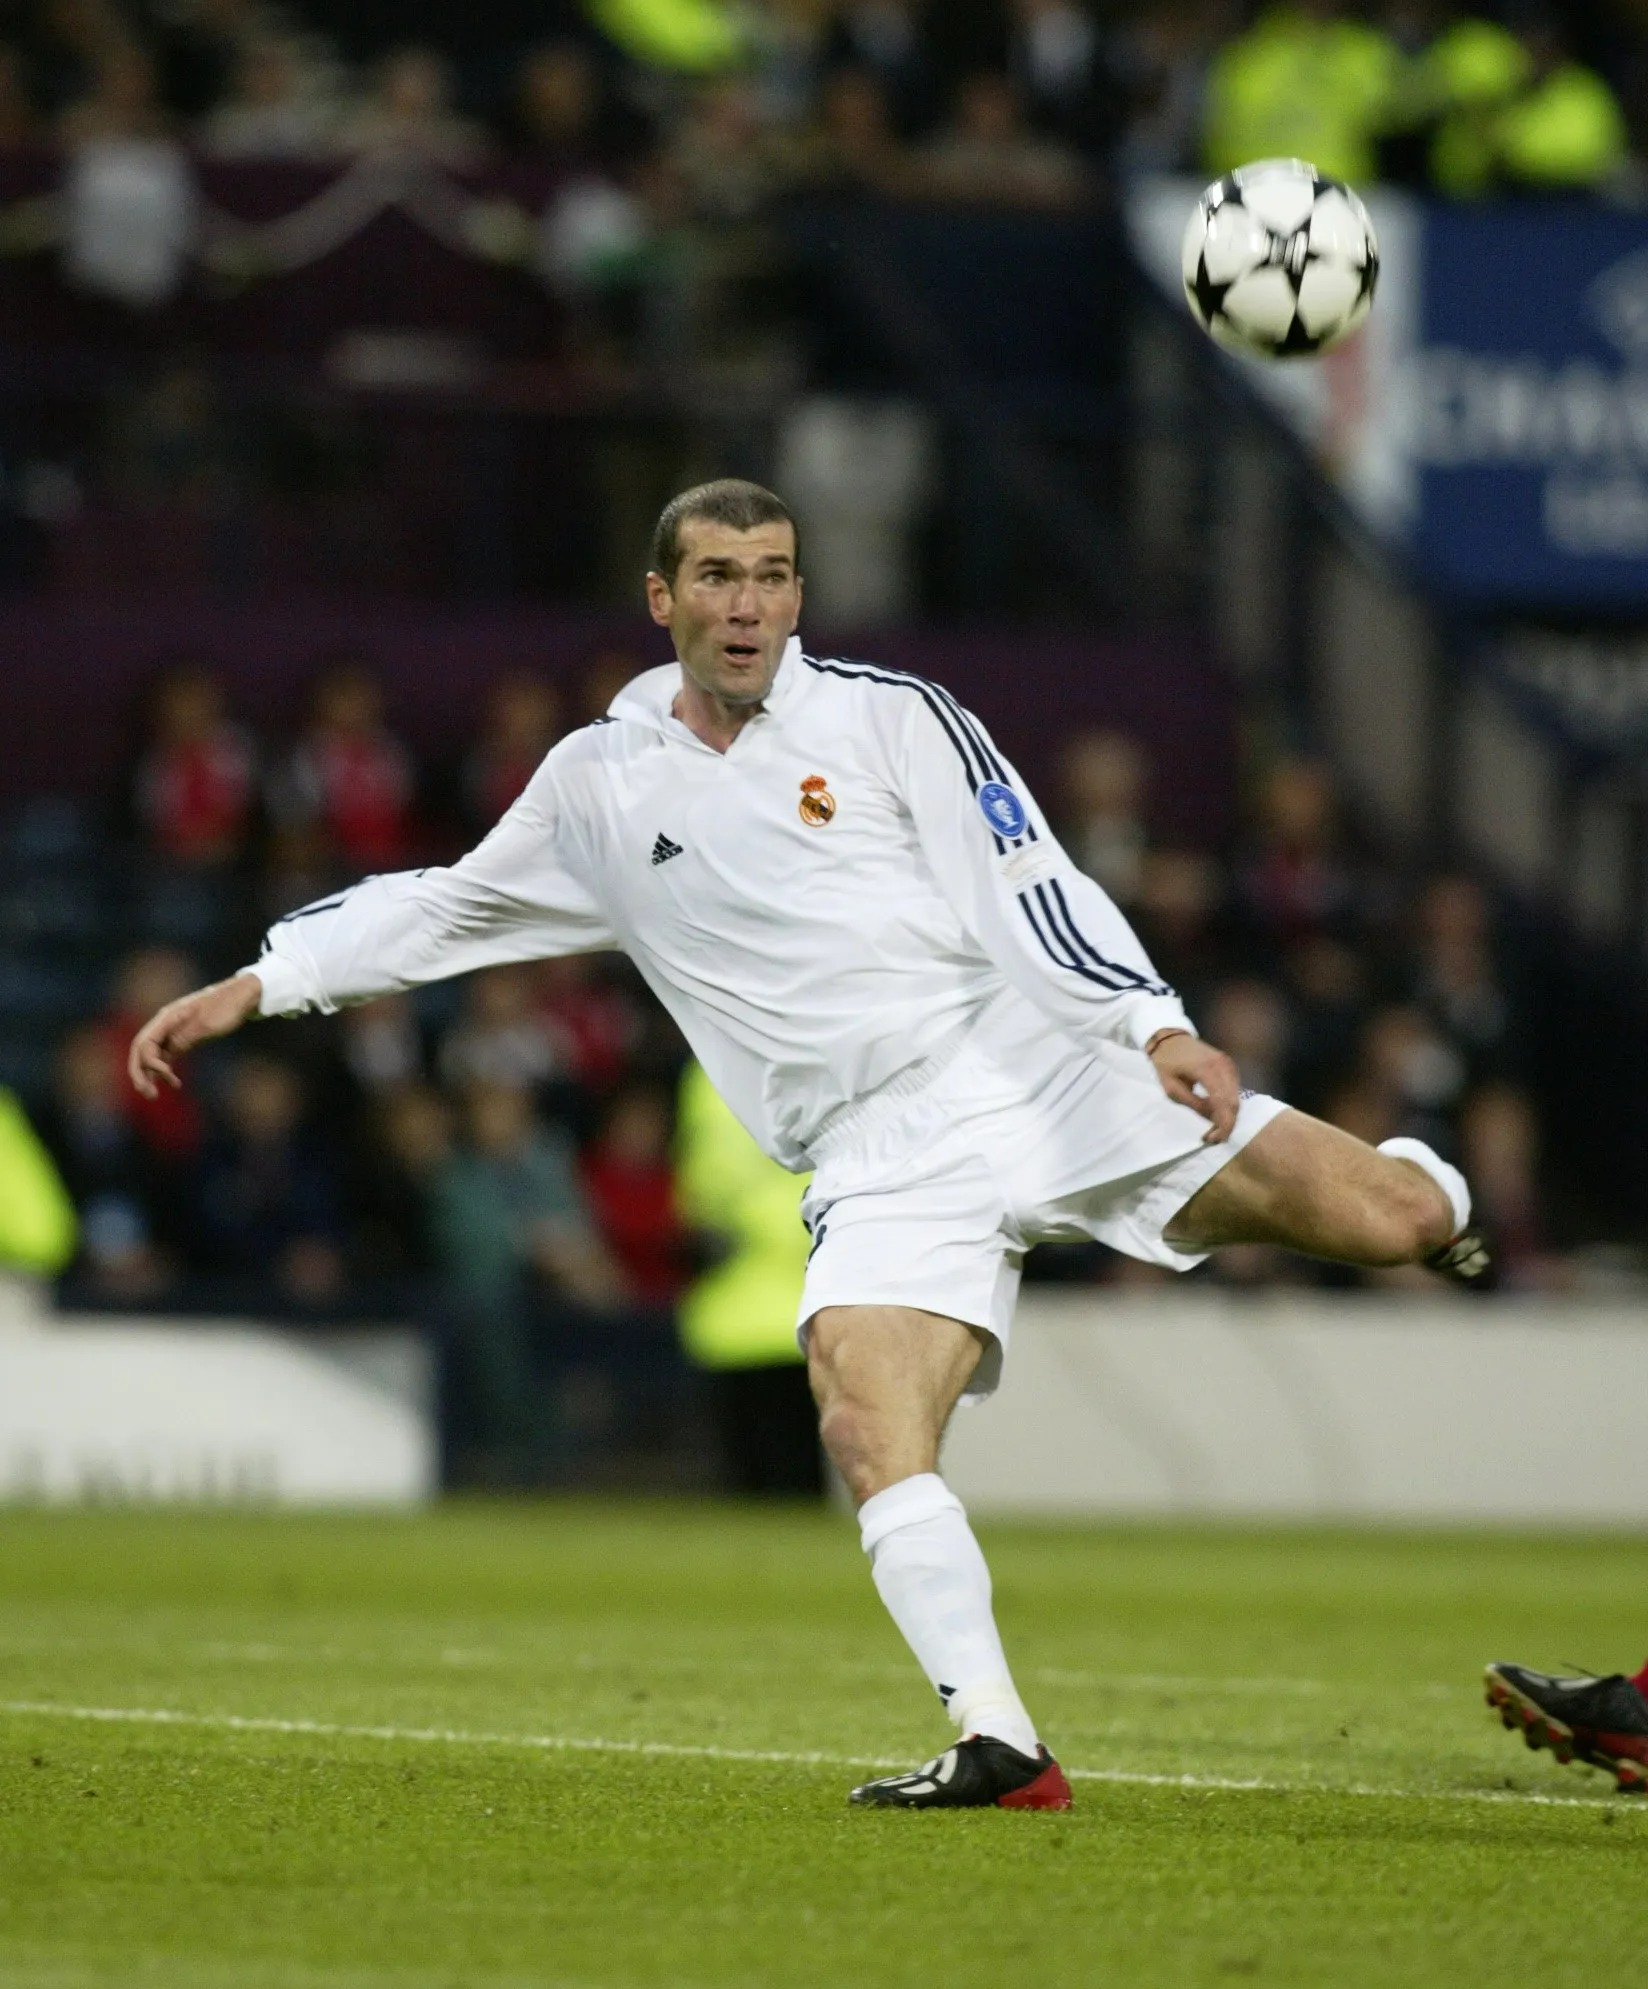 Zidane erzielte in diesen Fußballschuhen seinen Volleyschuss im Champions-League-Finale